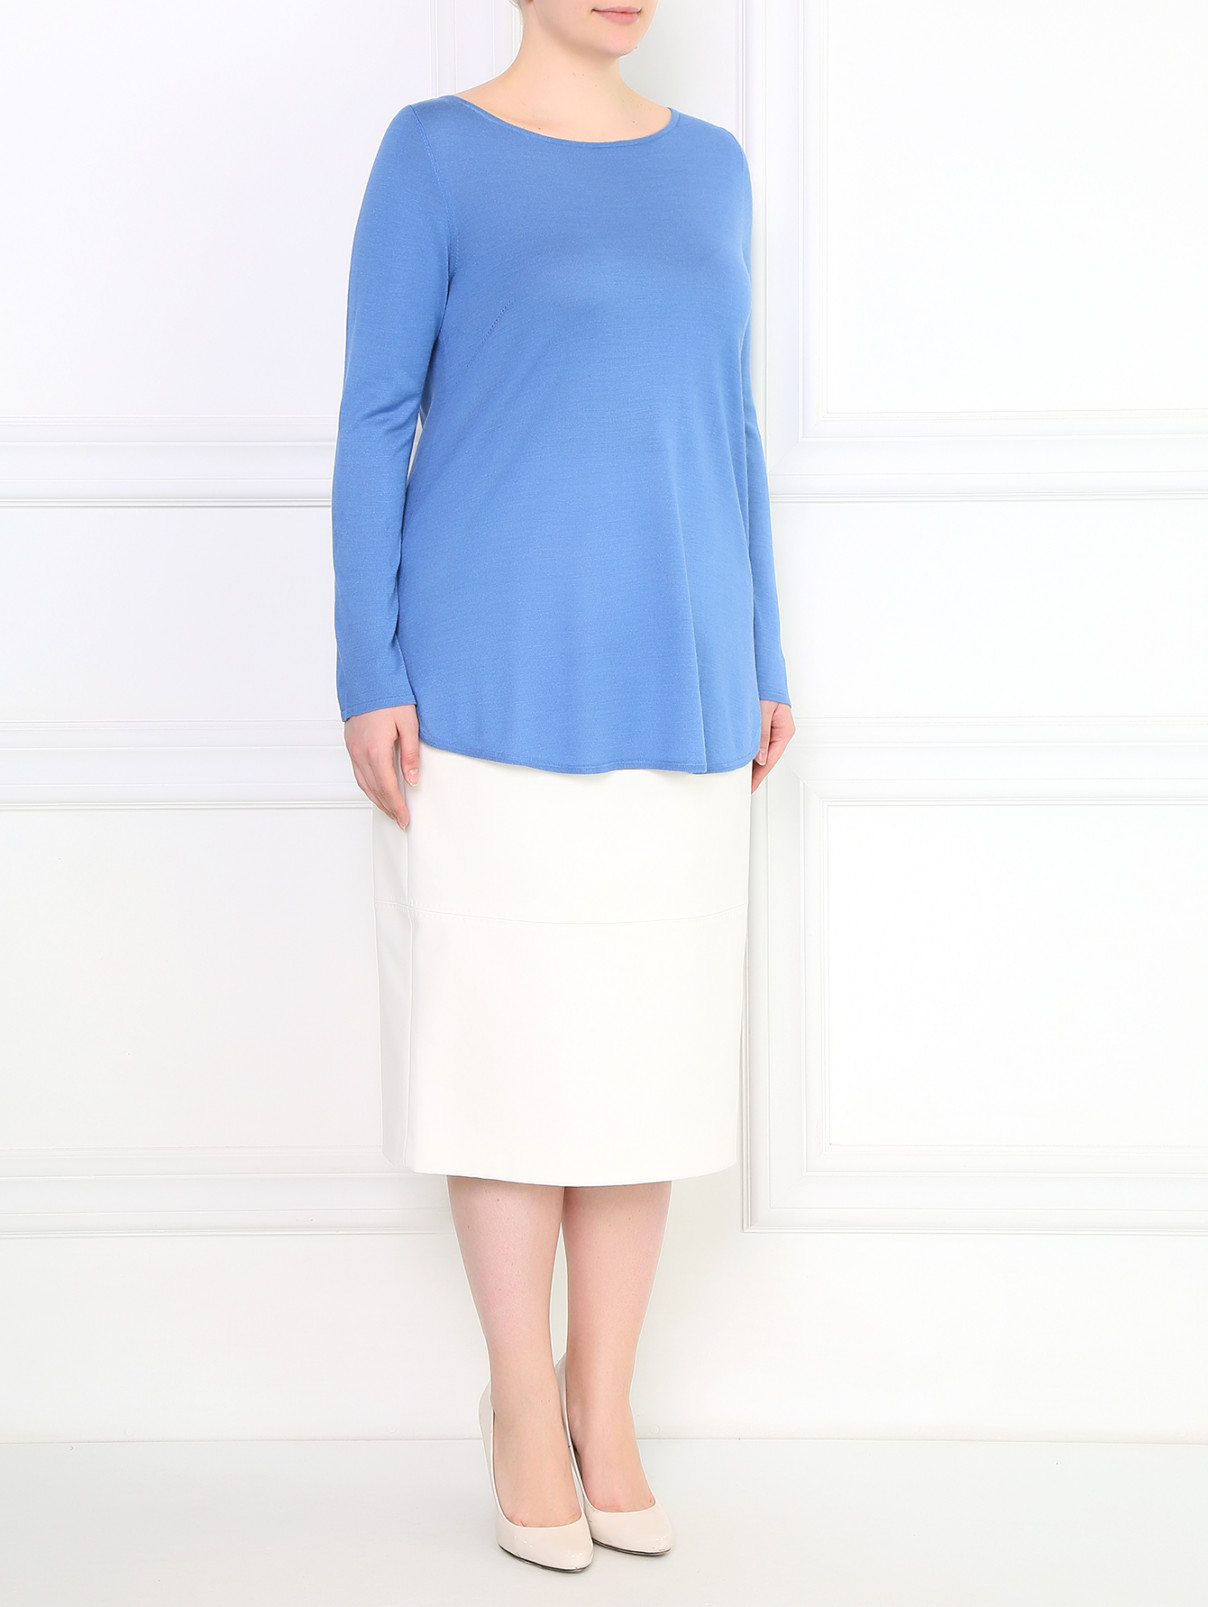 Джемпер из шелка Marina Rinaldi  –  Модель Общий вид  – Цвет:  Синий